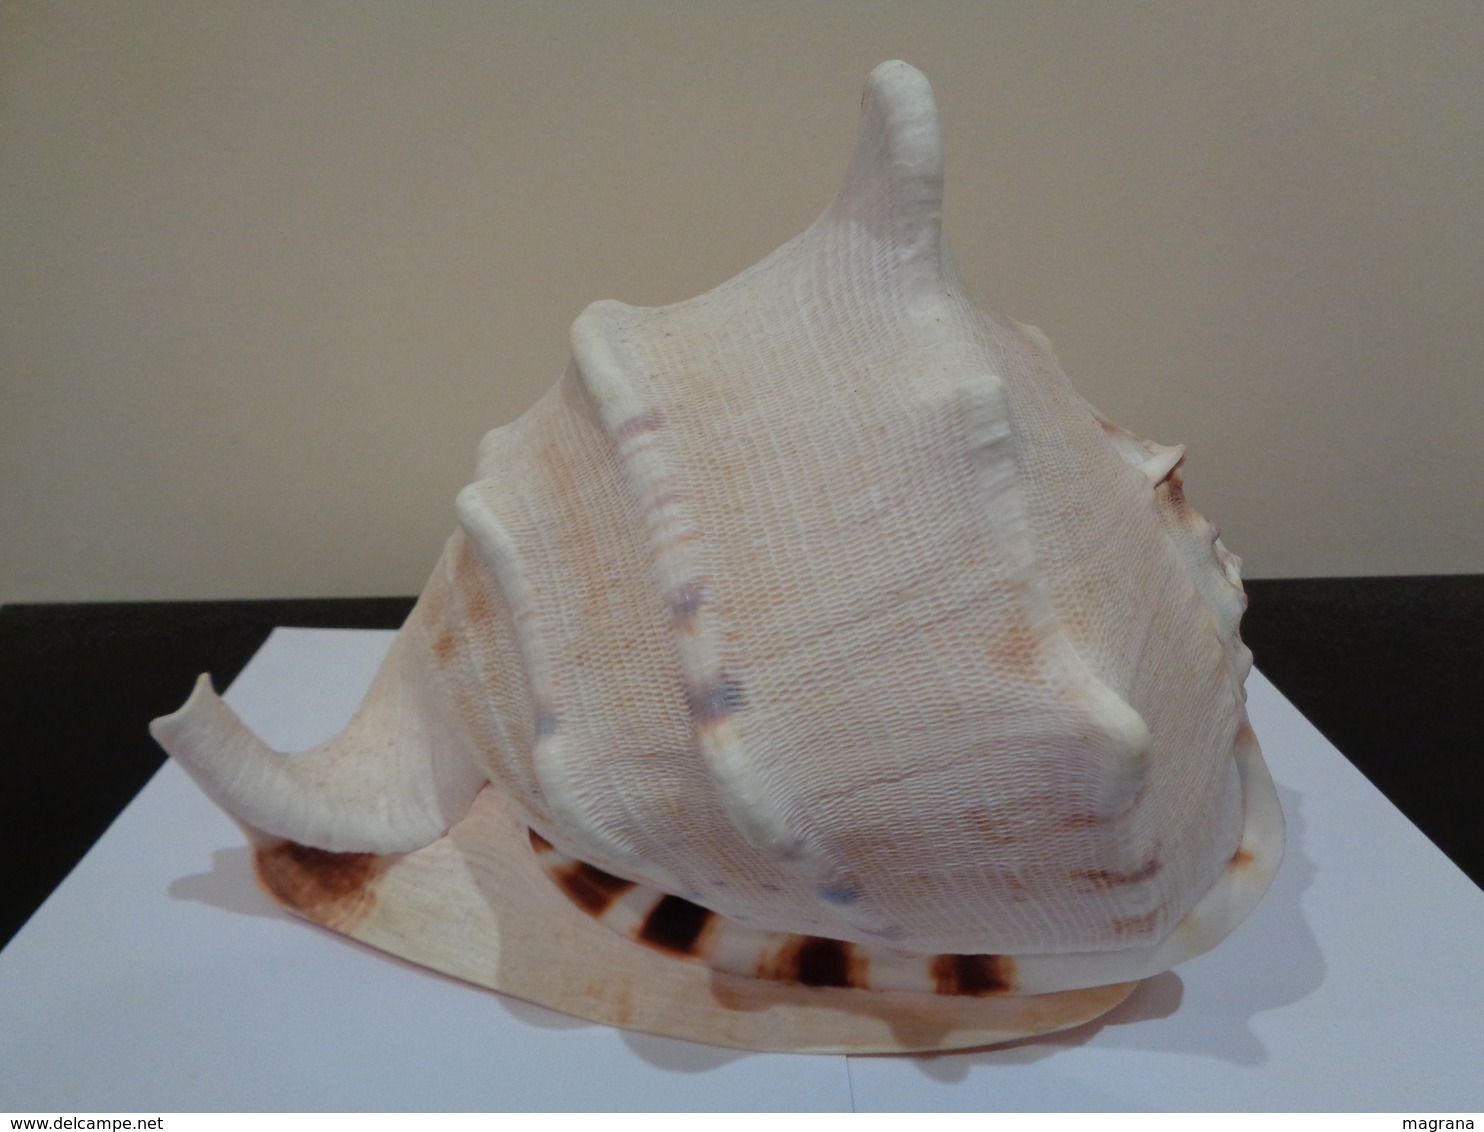 Malacologia, Gran concha de caracol marino Cassis cornuta - 28 x 25 x 24 cm.